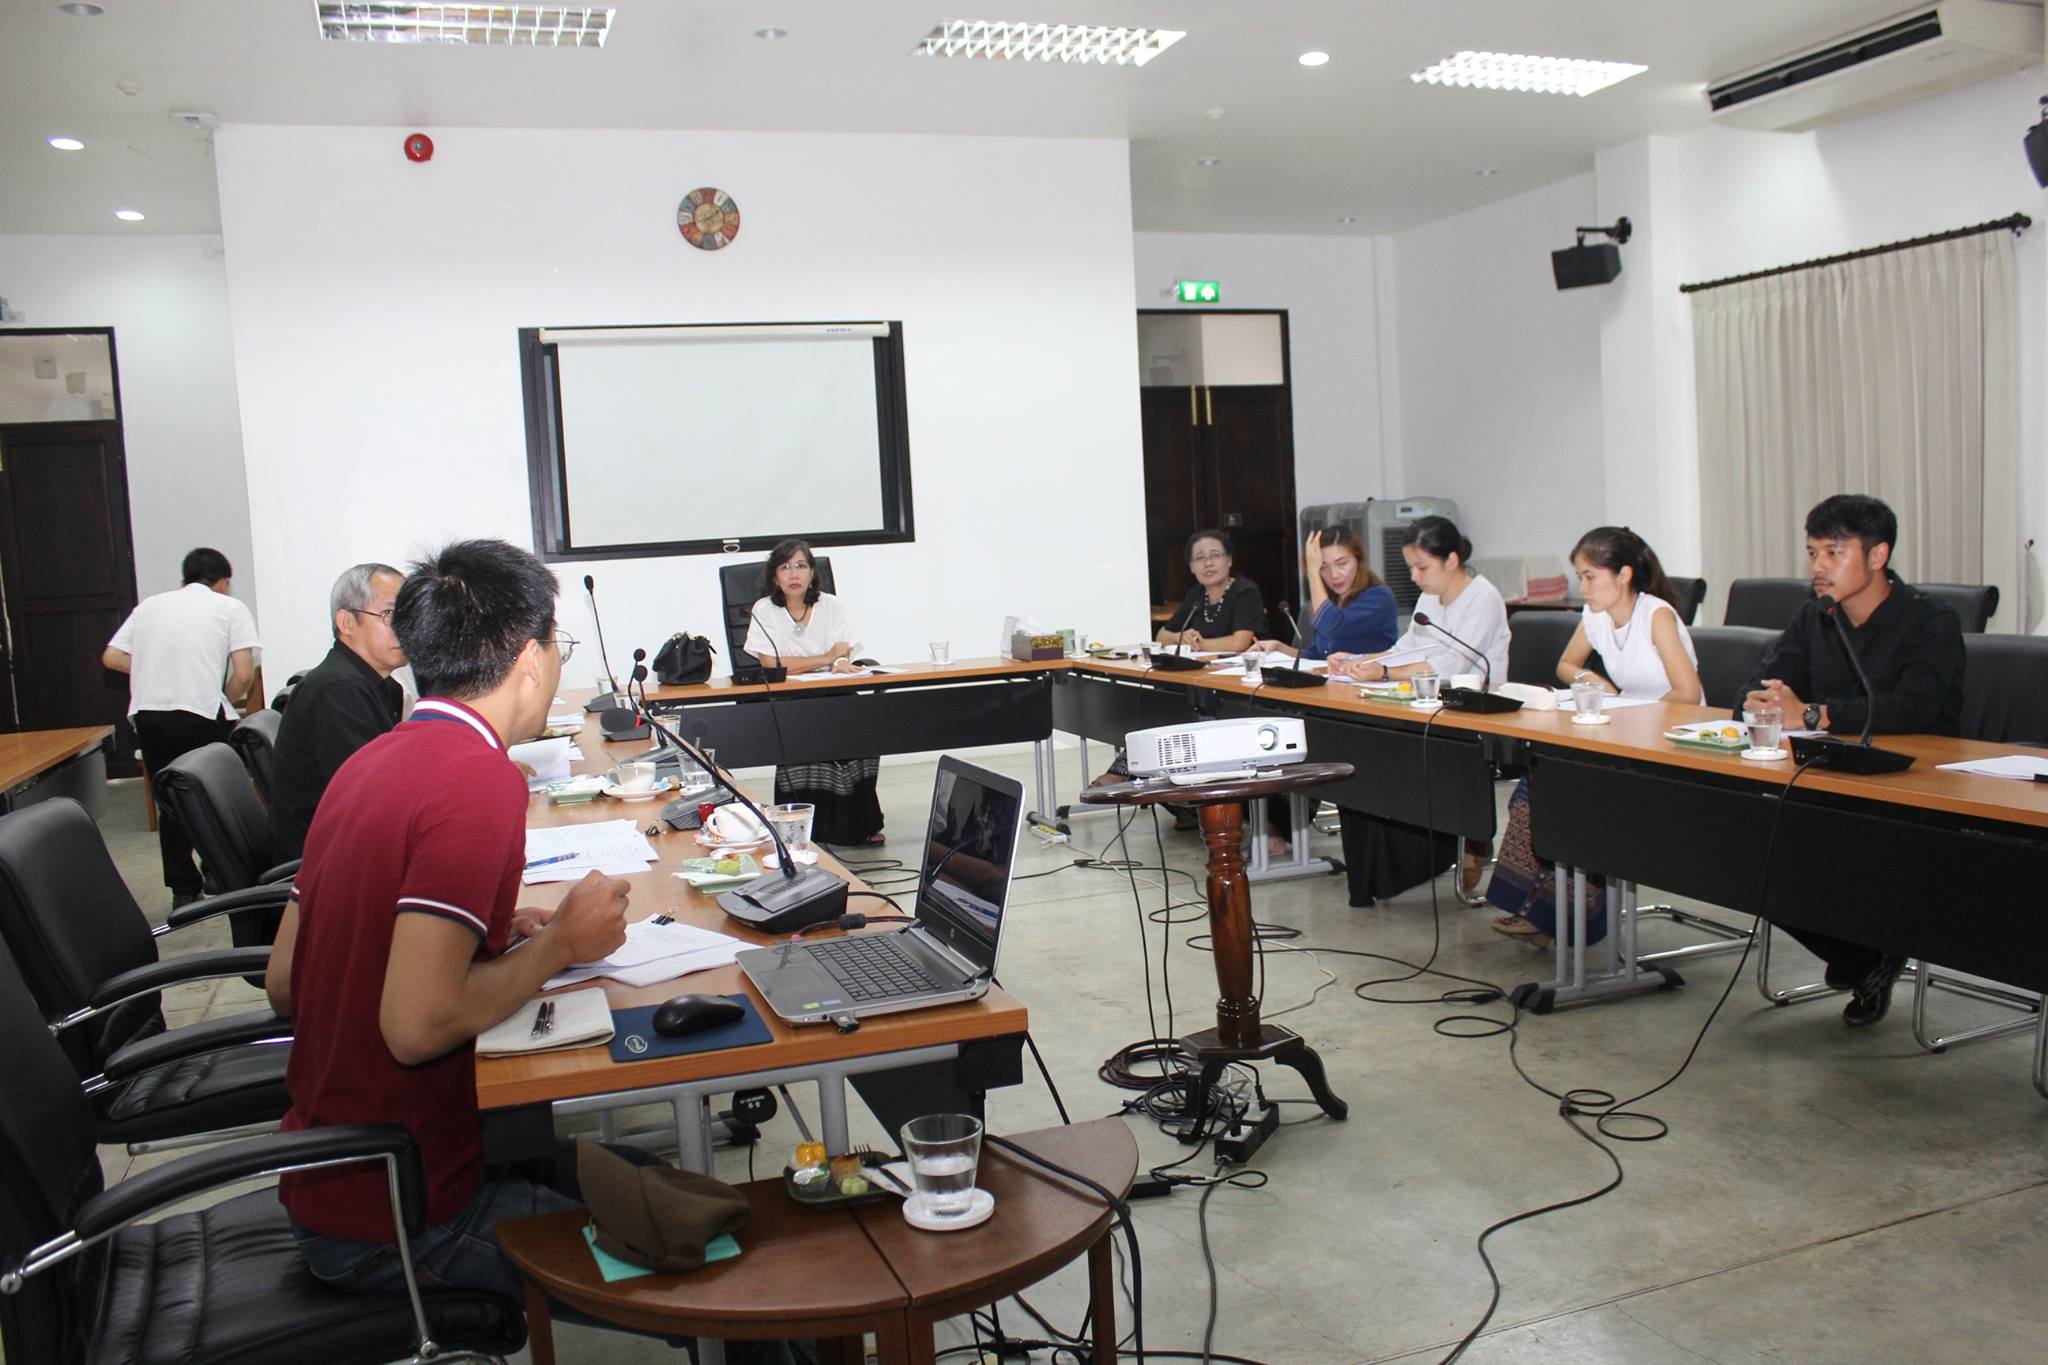 ประชุมคณะกรรมการตรวจรับพัสดุในโครงการอนุรักษ์หลองข้าวป่าซาง จังหวัดลำพูน ครั้งที่ 4/2560 เมื่อวันที่ 29 มิถุนายน 2560